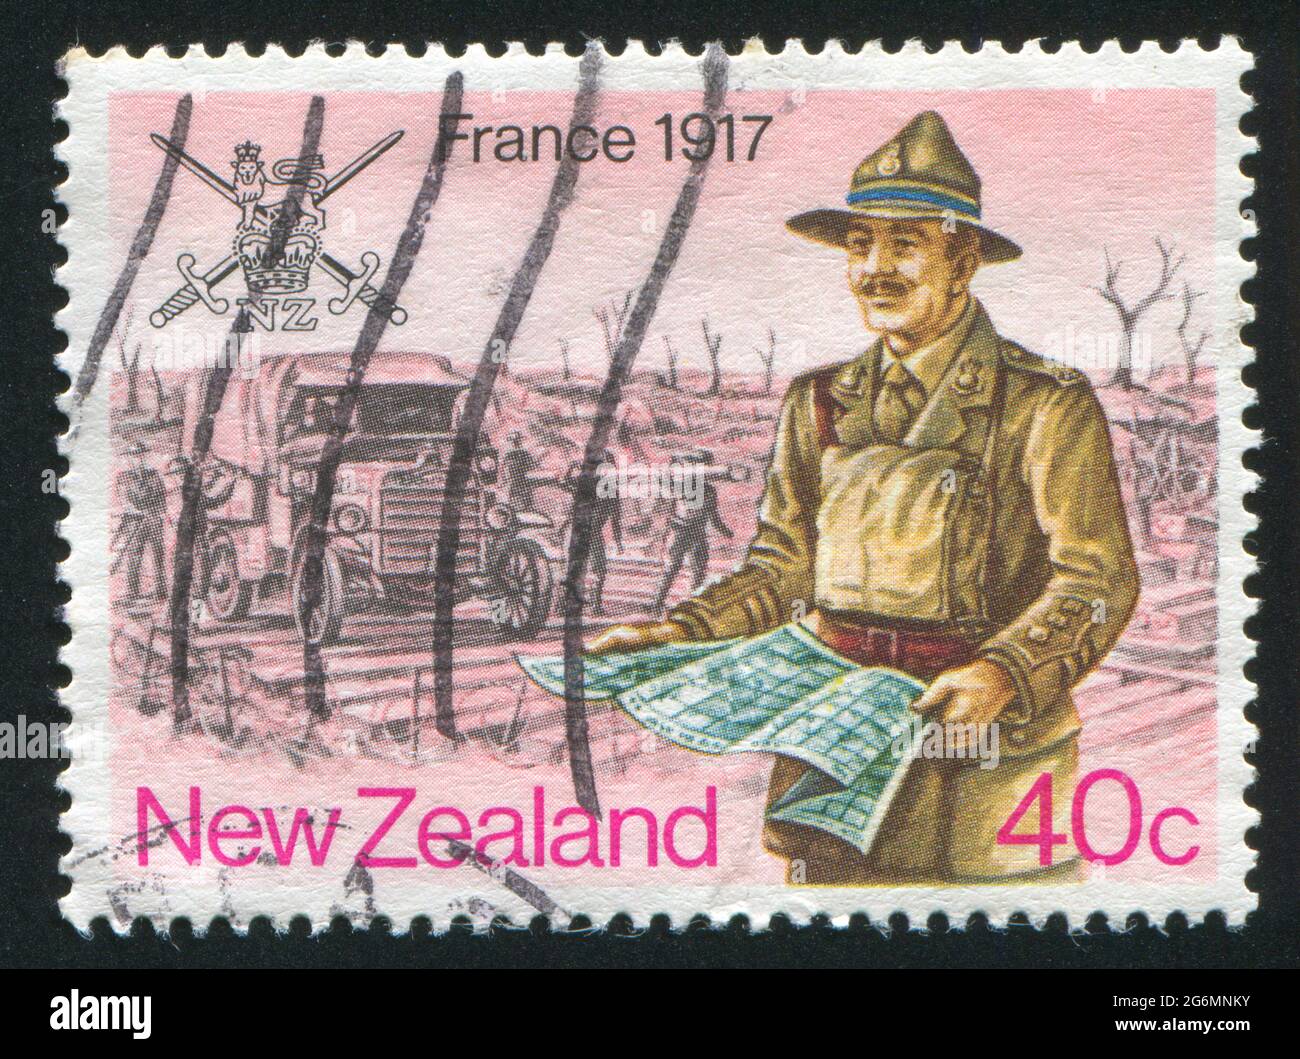 NOUVELLE-ZÉLANDE - VERS 1984: Timbre imprimé par la Nouvelle-Zélande, montre la guerre de France, vers 1984 Banque D'Images